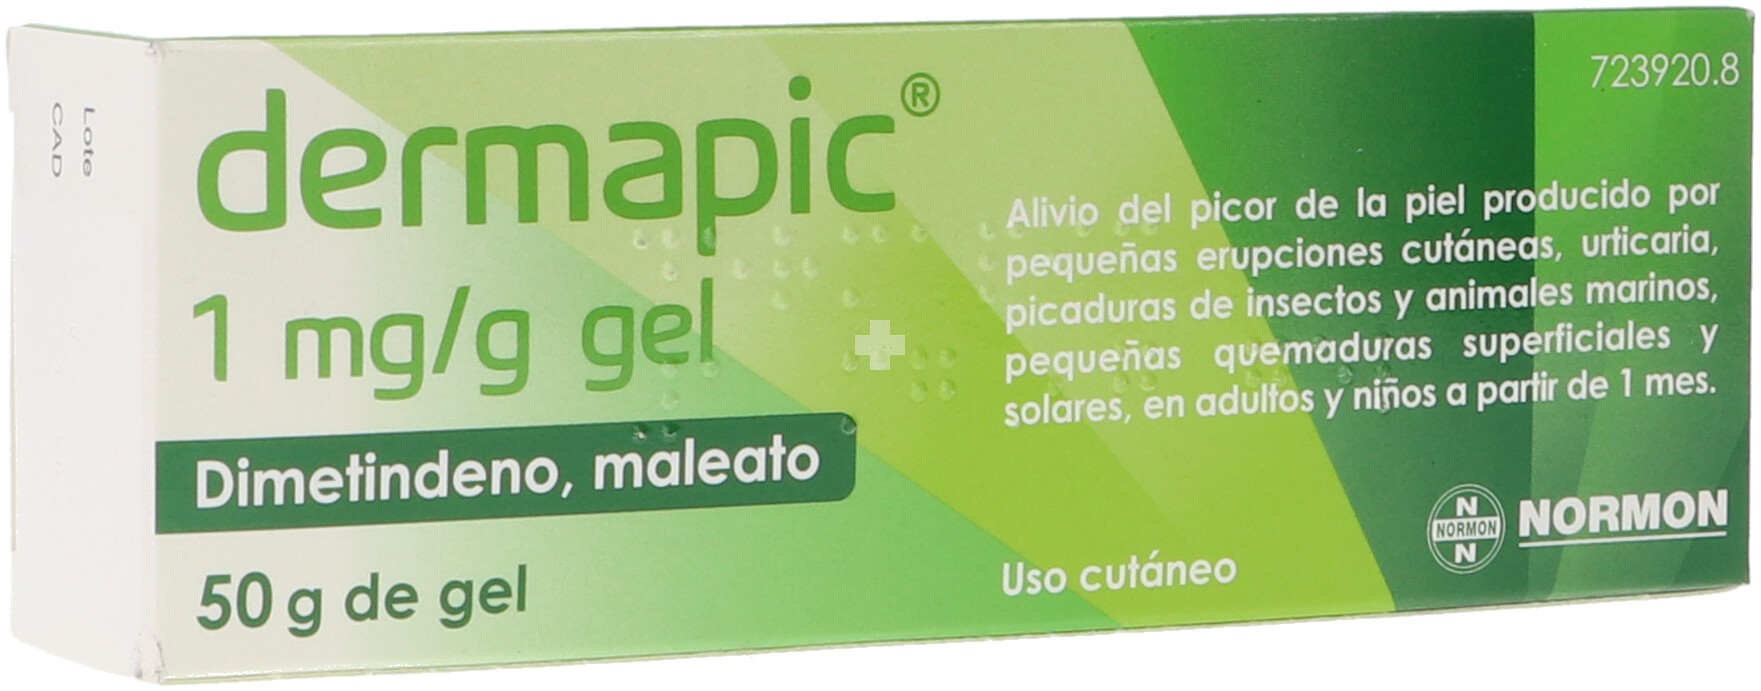 Dermapic 1 mg/G gel - 1 Tubo De 50 g